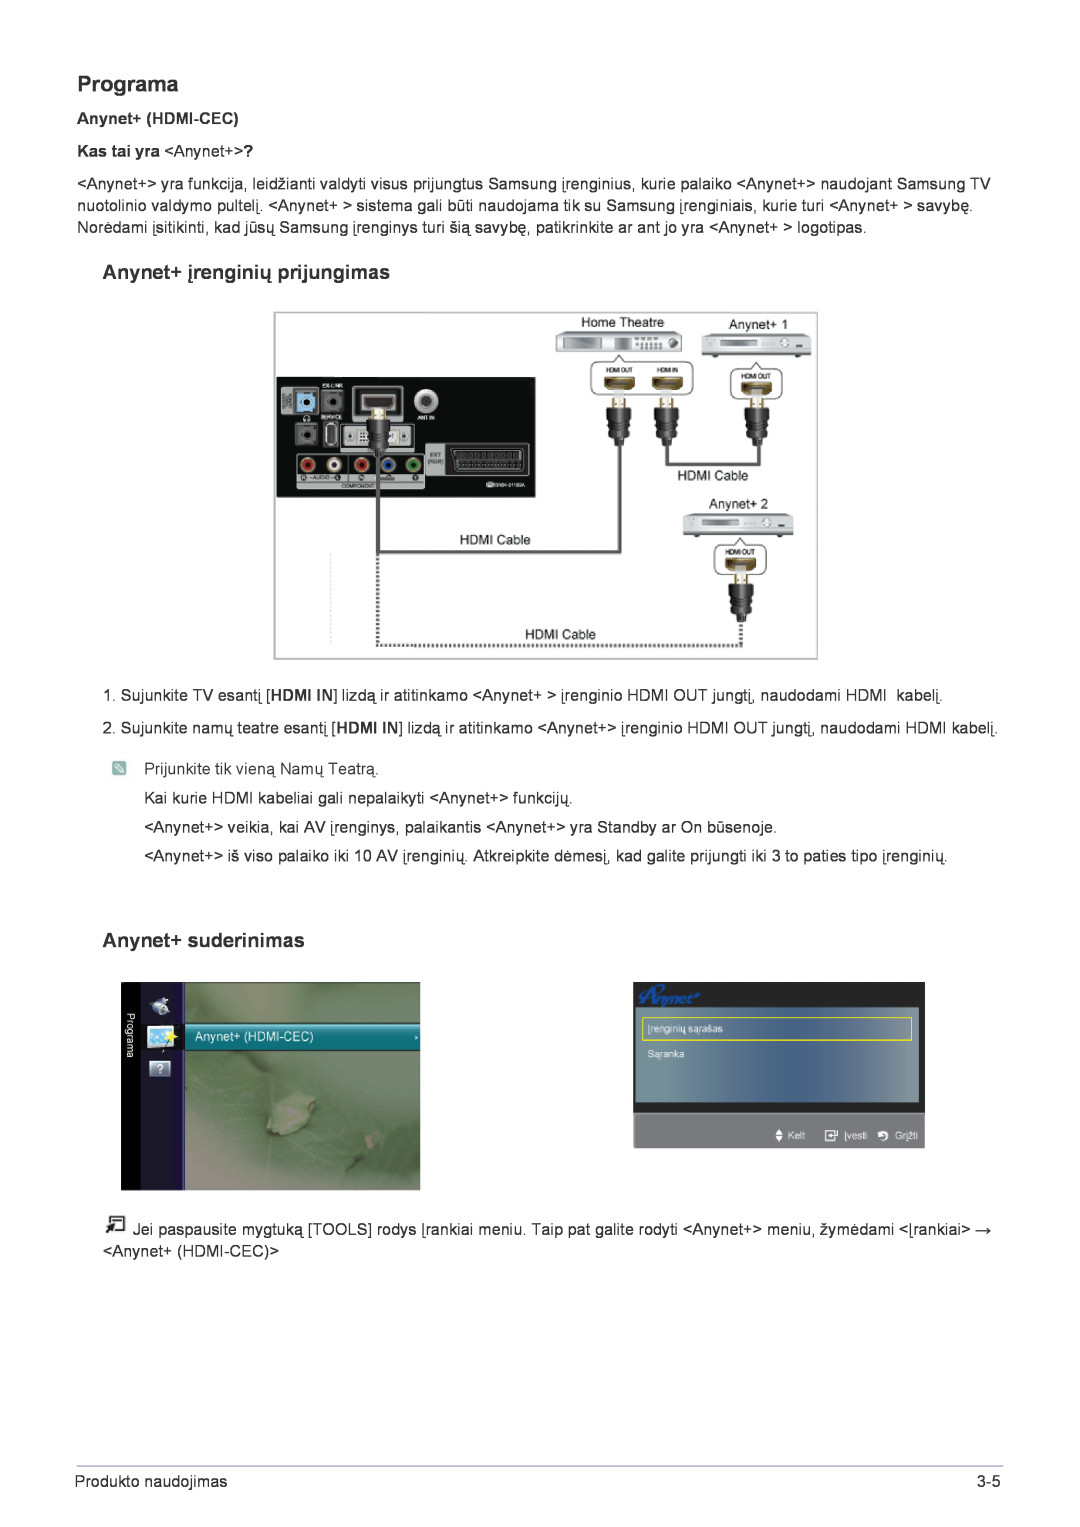 Samsung LS22FMDGF/EN Programa, Anynet+ įrenginių prijungimas, Anynet+ suderinimas, Anynet+ HDMI-CEC Kas tai yra Anynet+? 